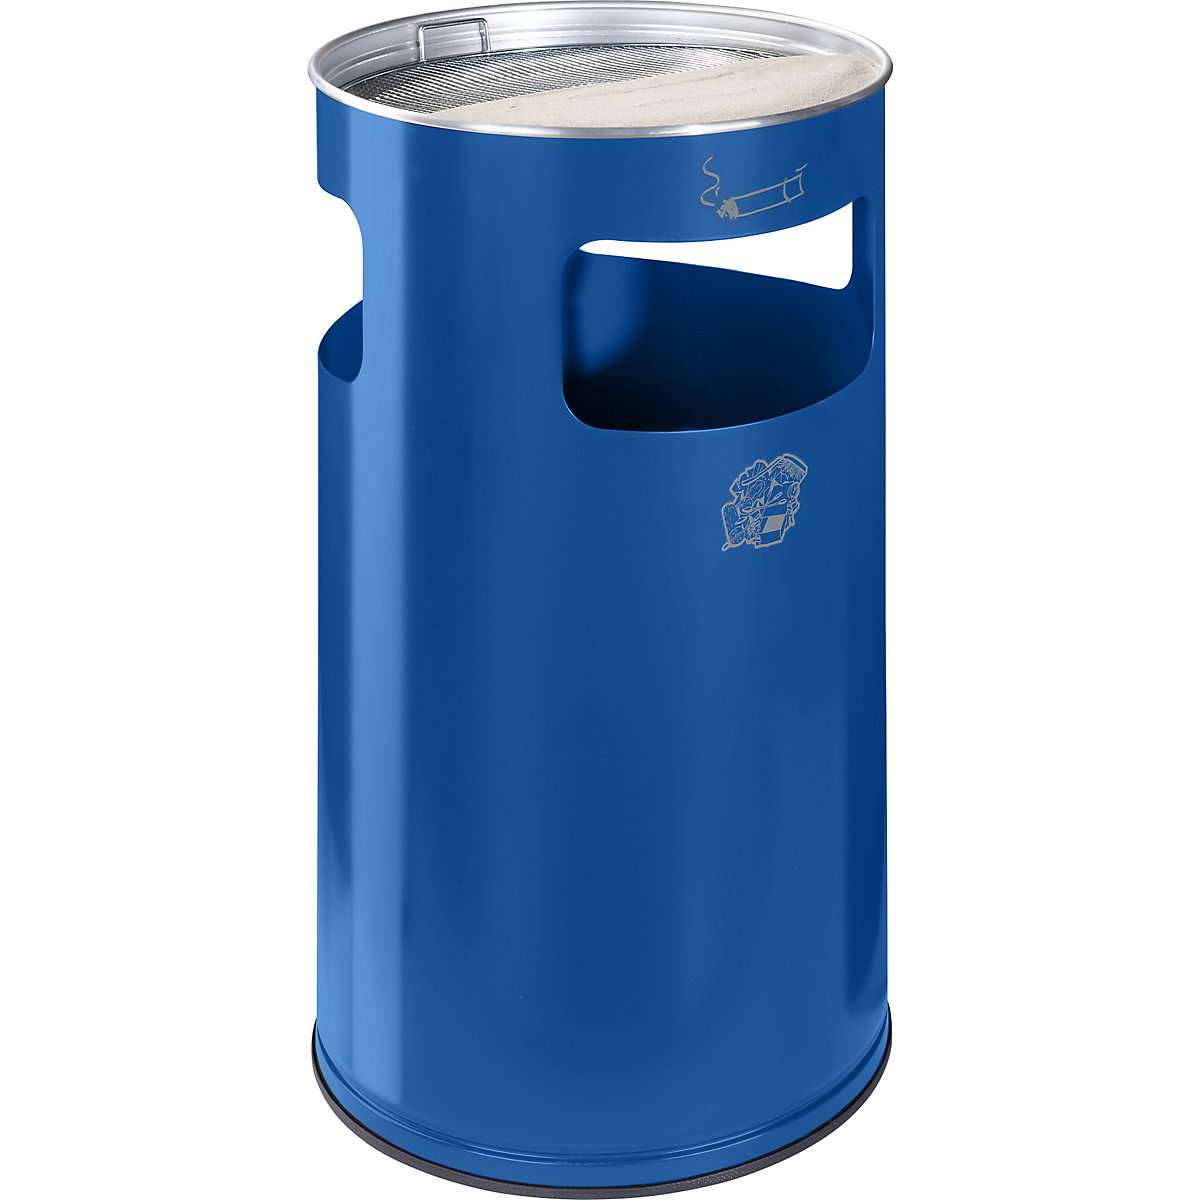 VAR – Combiné cendrier-poubelle, capacité 69 l, h x Ø 760 x 420 mm, tôle d'acier, bleu gentiane